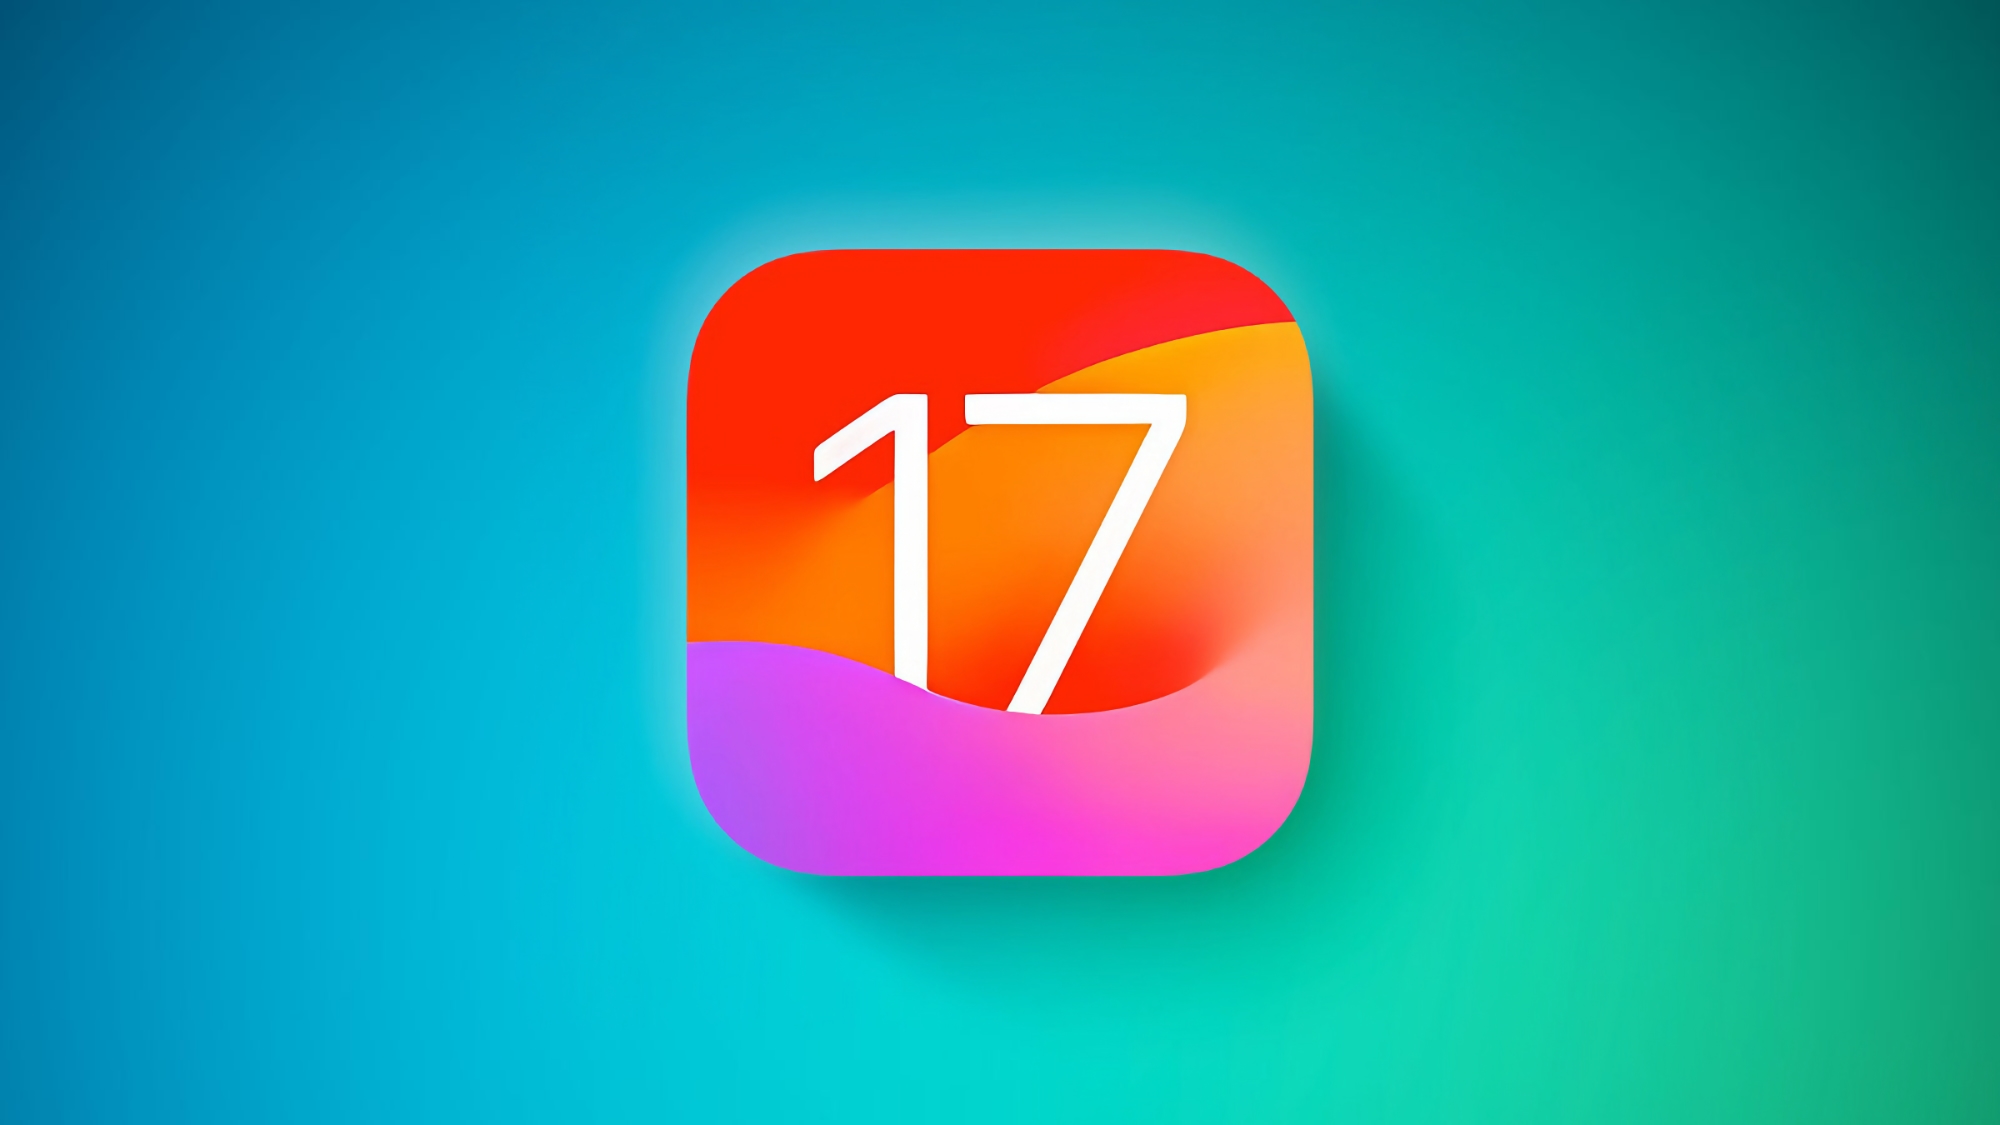 Apple випустила iOS 17 Beta 2: що нового